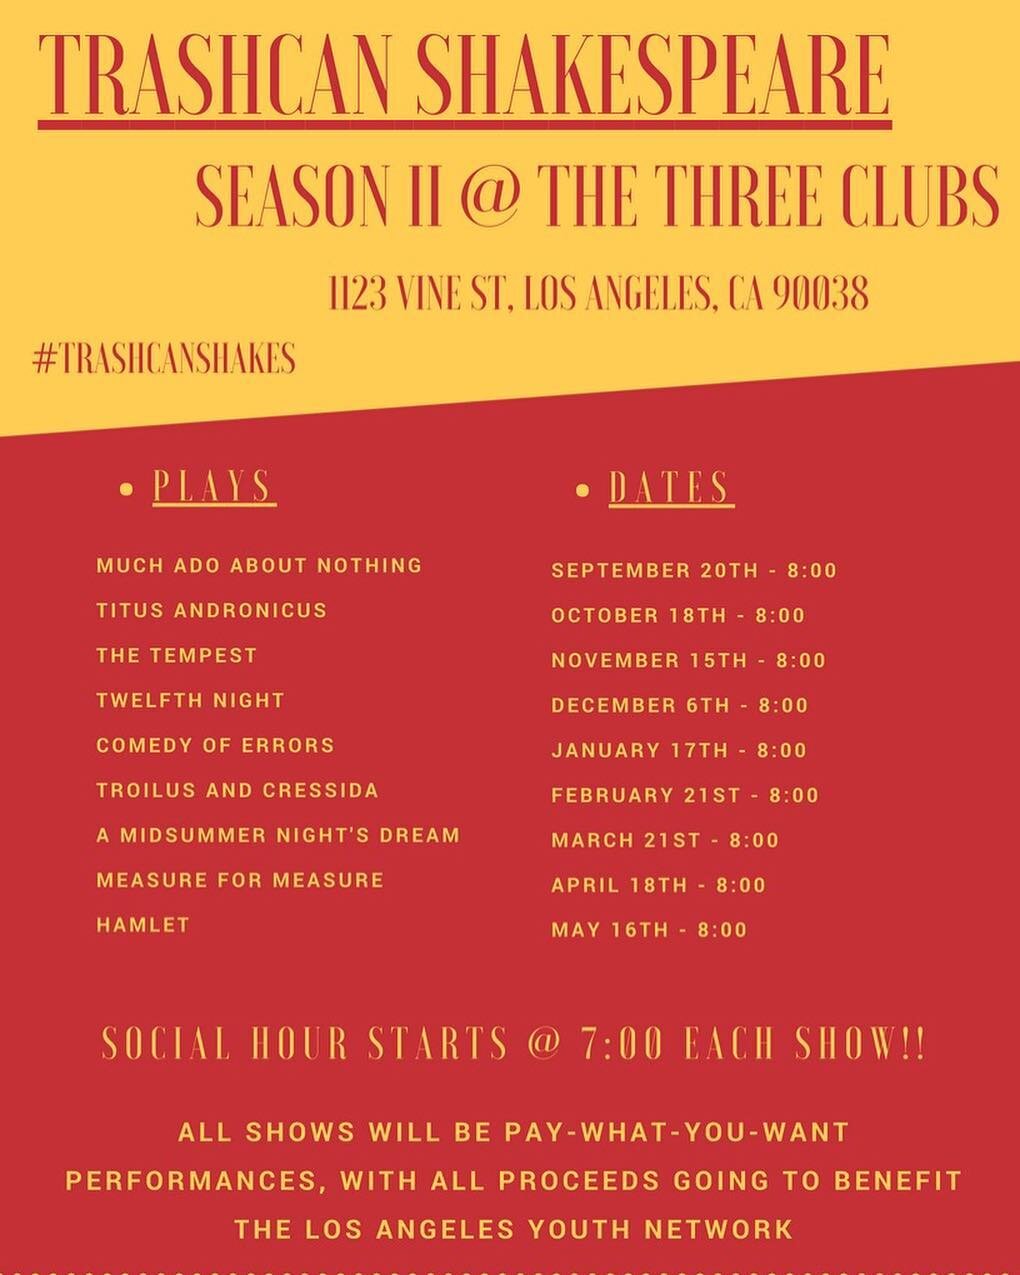 Who&rsquo;s ready to party at @threeclubs?! #trashcanshakes #thirdthursdays #thirstythursdays #tellafriend